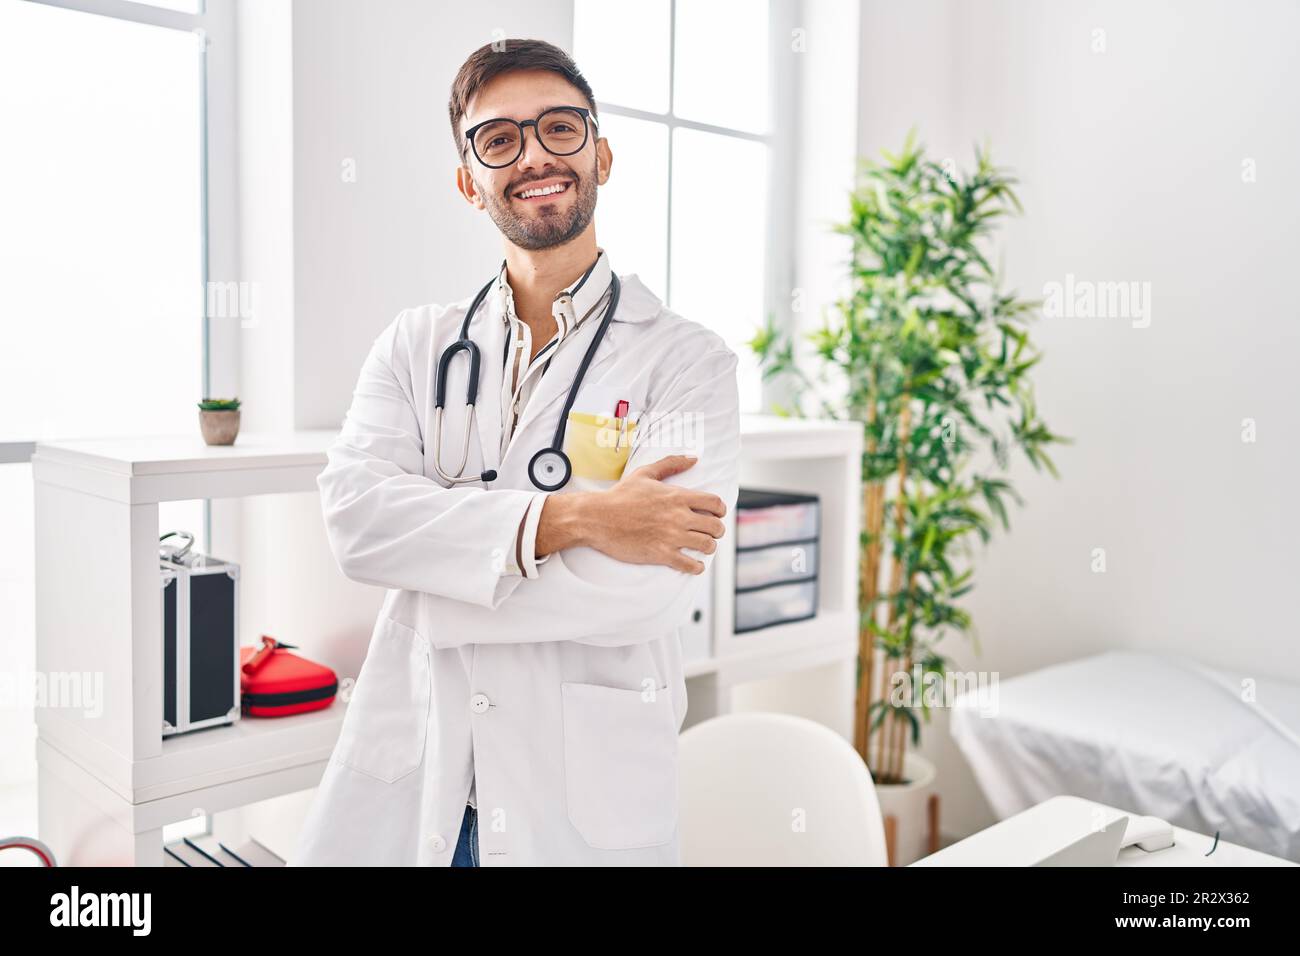 Lateinamerikanischer Mann in Arztuniform und Stethoskop, fröhliches  Gesicht, mit gekreuzten Armen und Blick in die Kamera. Positive Person  Stockfotografie - Alamy